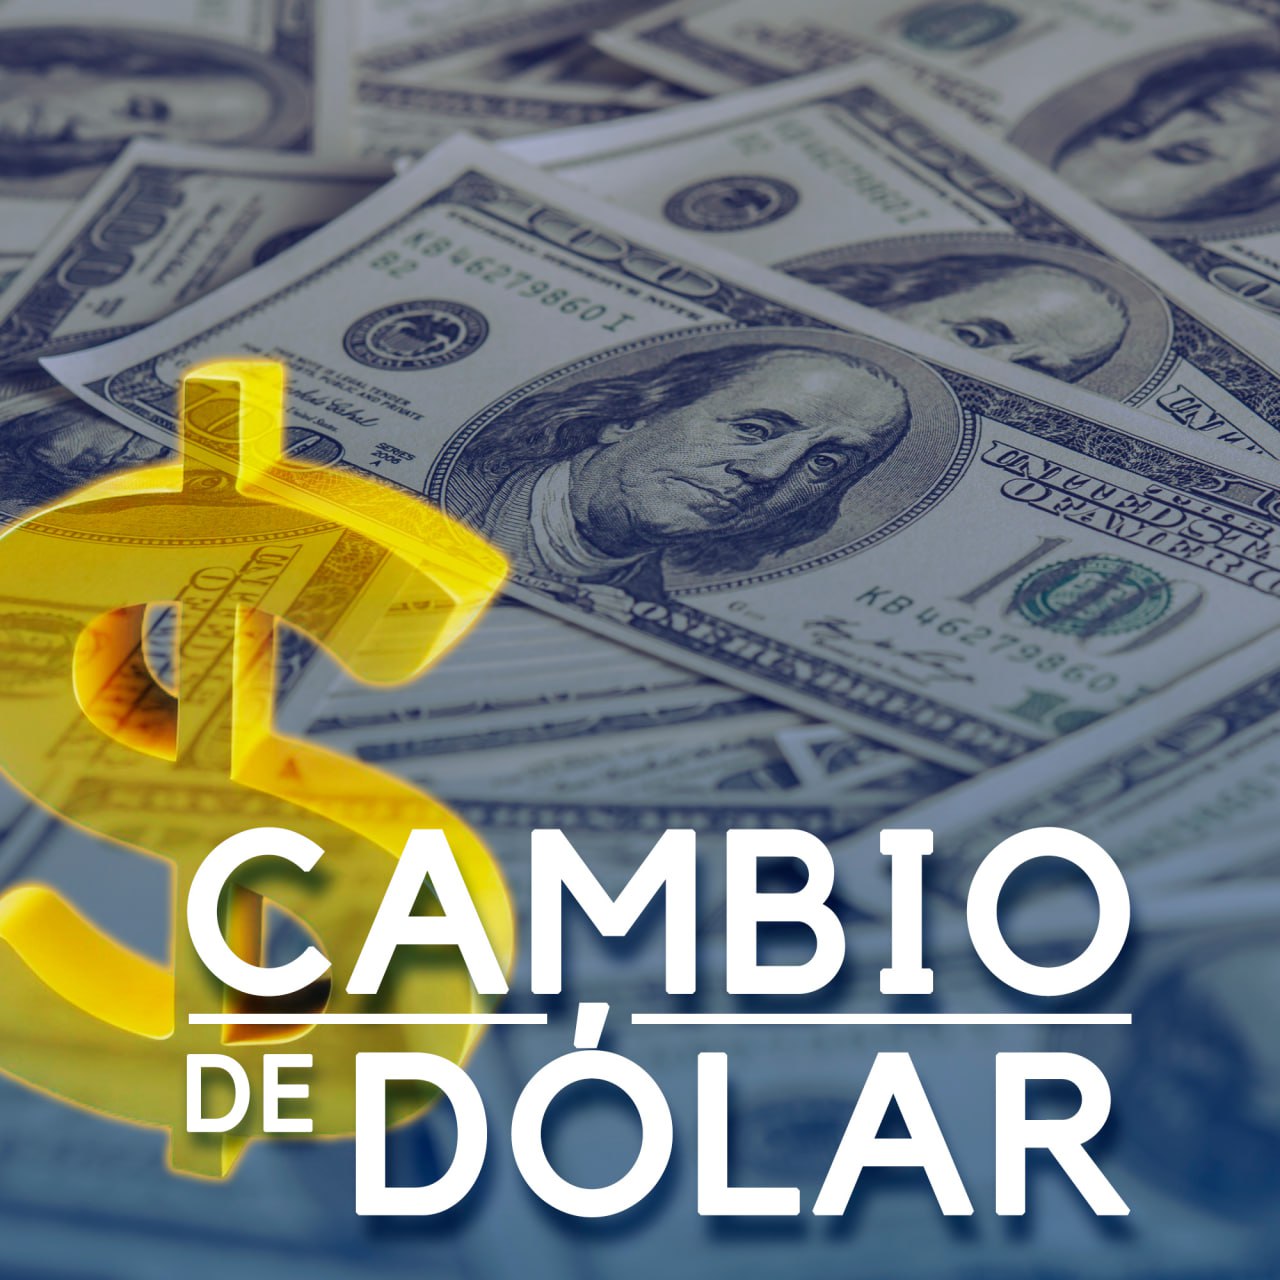 Precio del dólar: el billete verde abre en 18.73 pesos al mayoreo